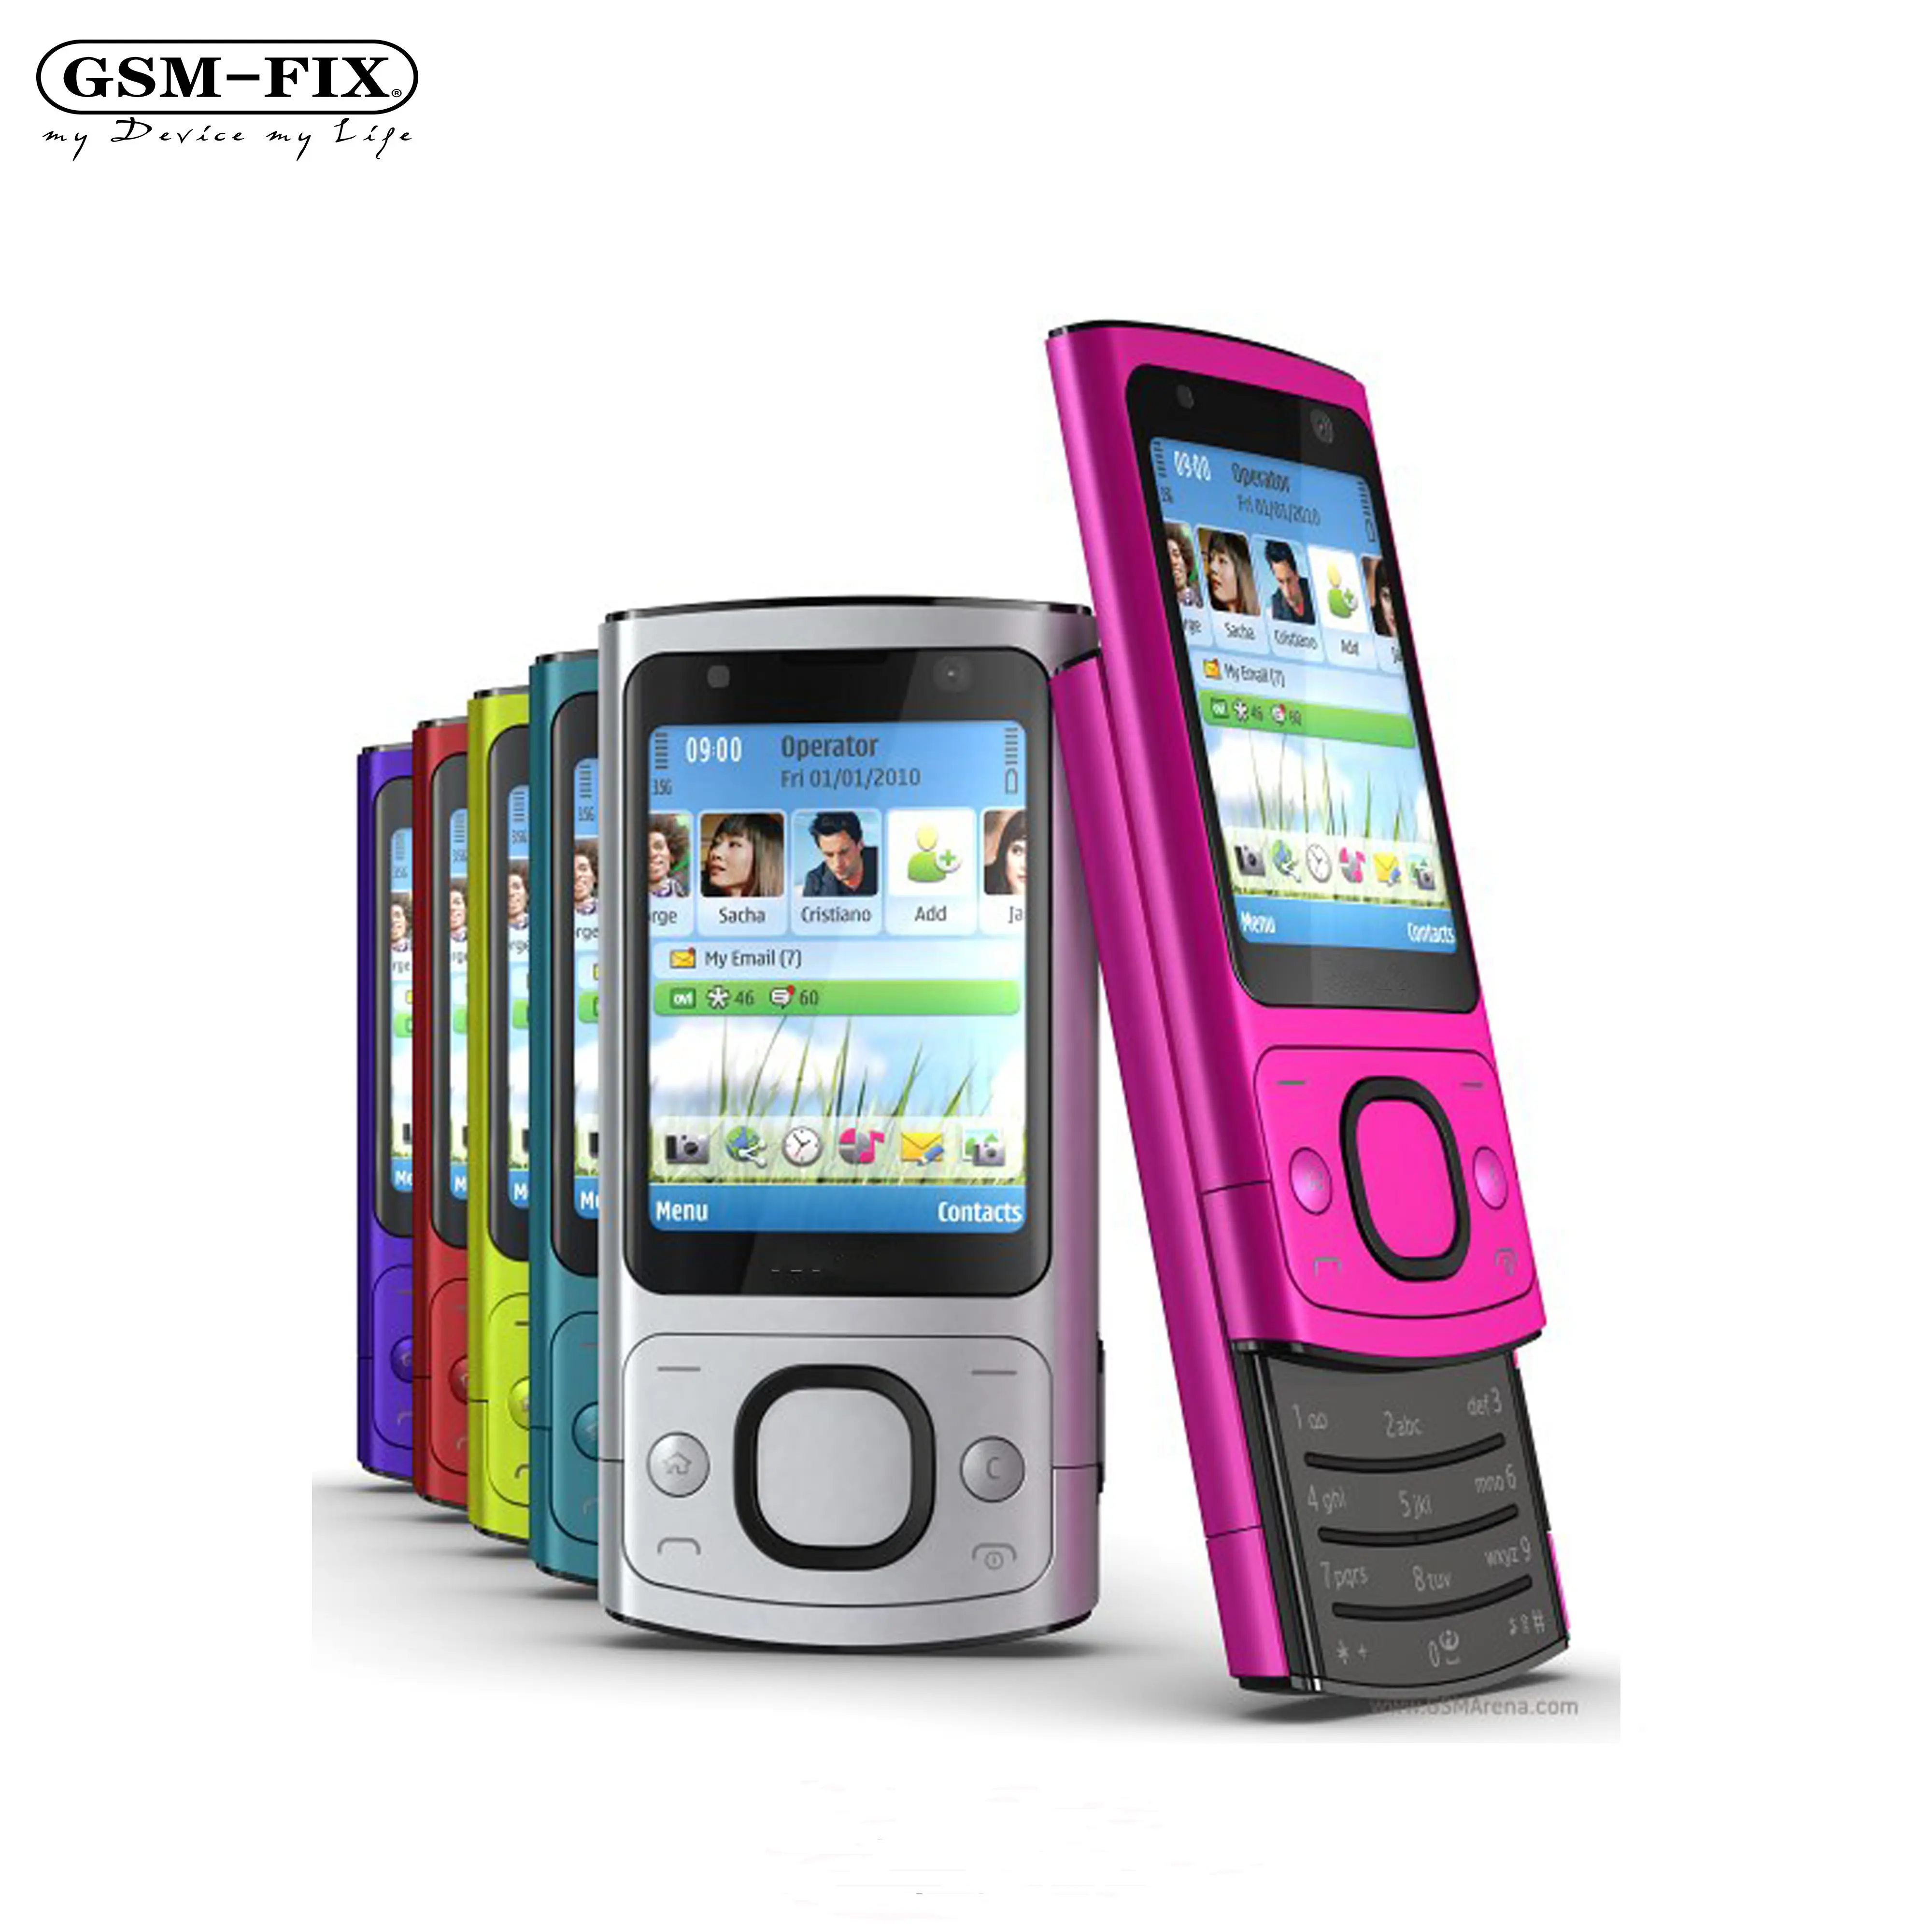 GSM-FIX Original 6700 s Para NOKIA Mobile Phone Câmera 5.0MP Bluetooth Java Desbloqueado 6700 slide Telefone